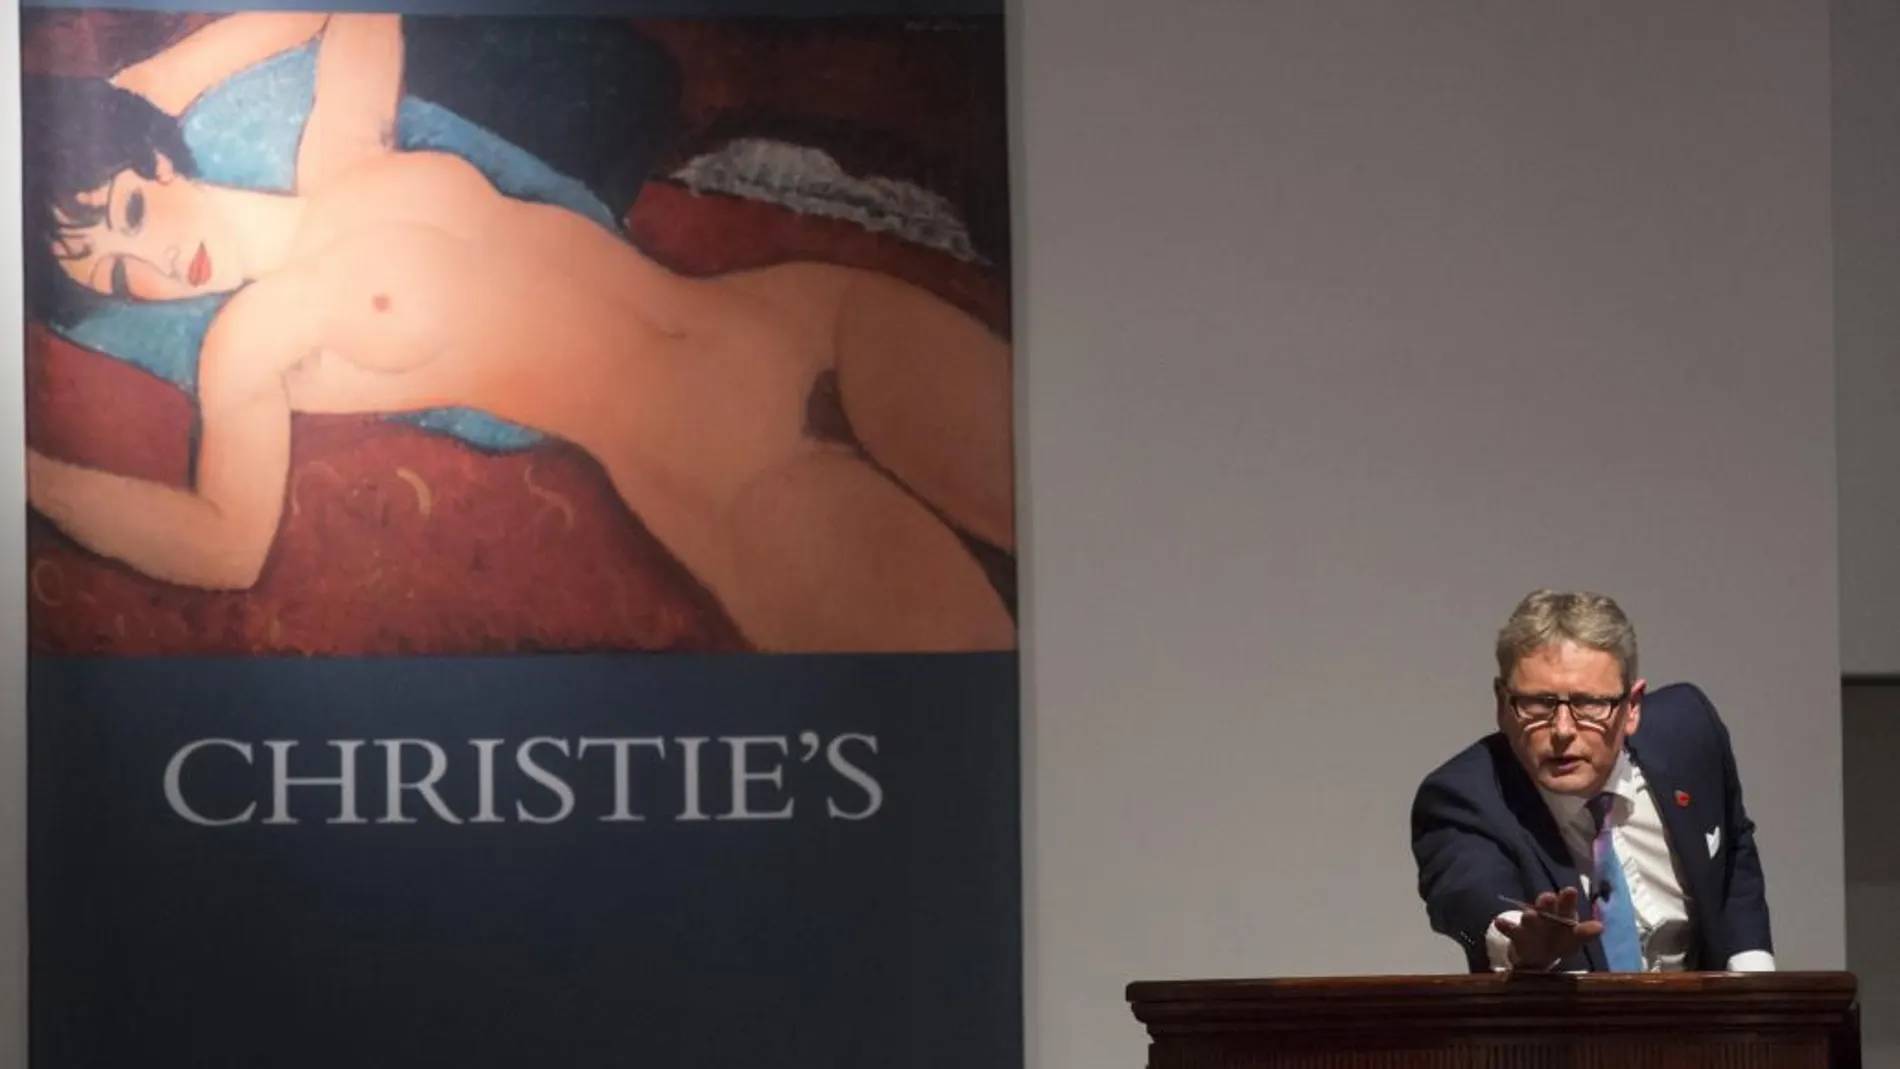 "Reclining Nude"de Amedeu Modigliani subastado en Christie's consiguió llegar hasta los 158,3 millones de euros